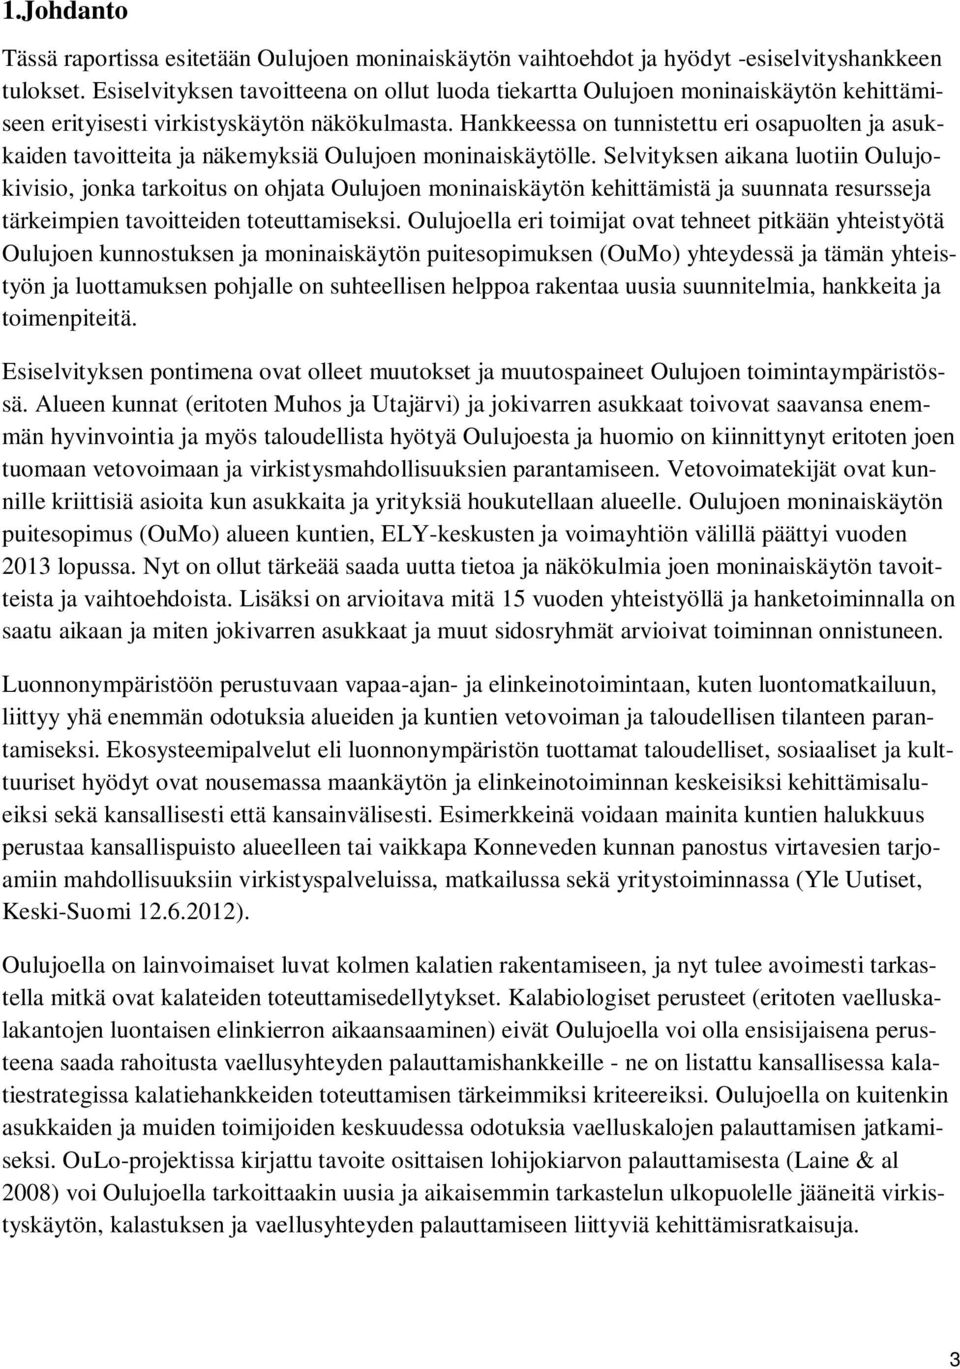 Hankkeessa on tunnistettu eri osapuolten ja asukkaiden tavoitteita ja näkemyksiä Oulujoen moninaiskäytölle.